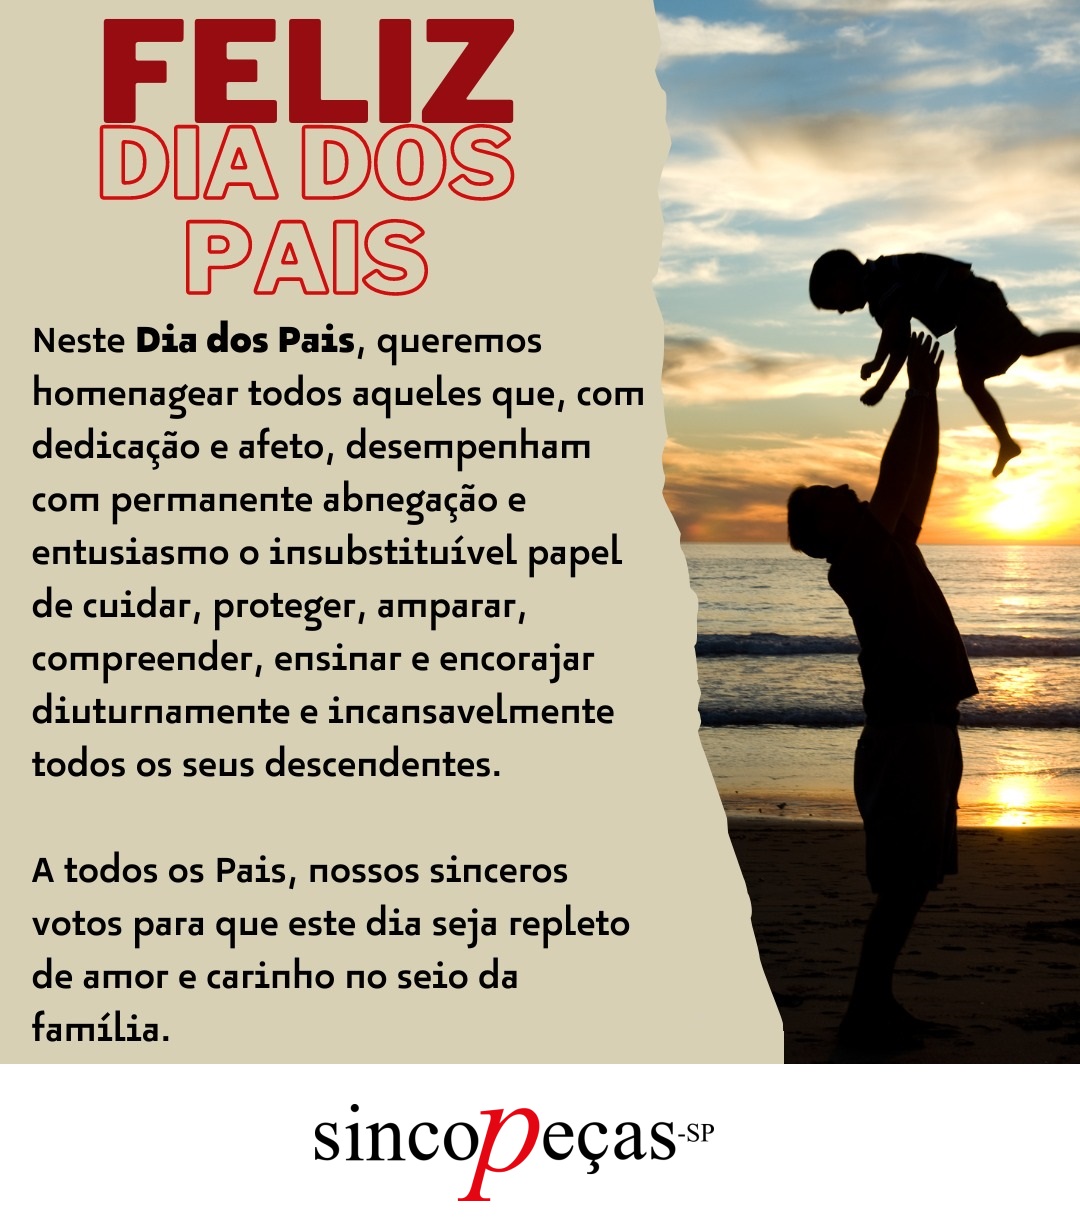 Sincopeças-SP deseja Feliz Dia dos Pais